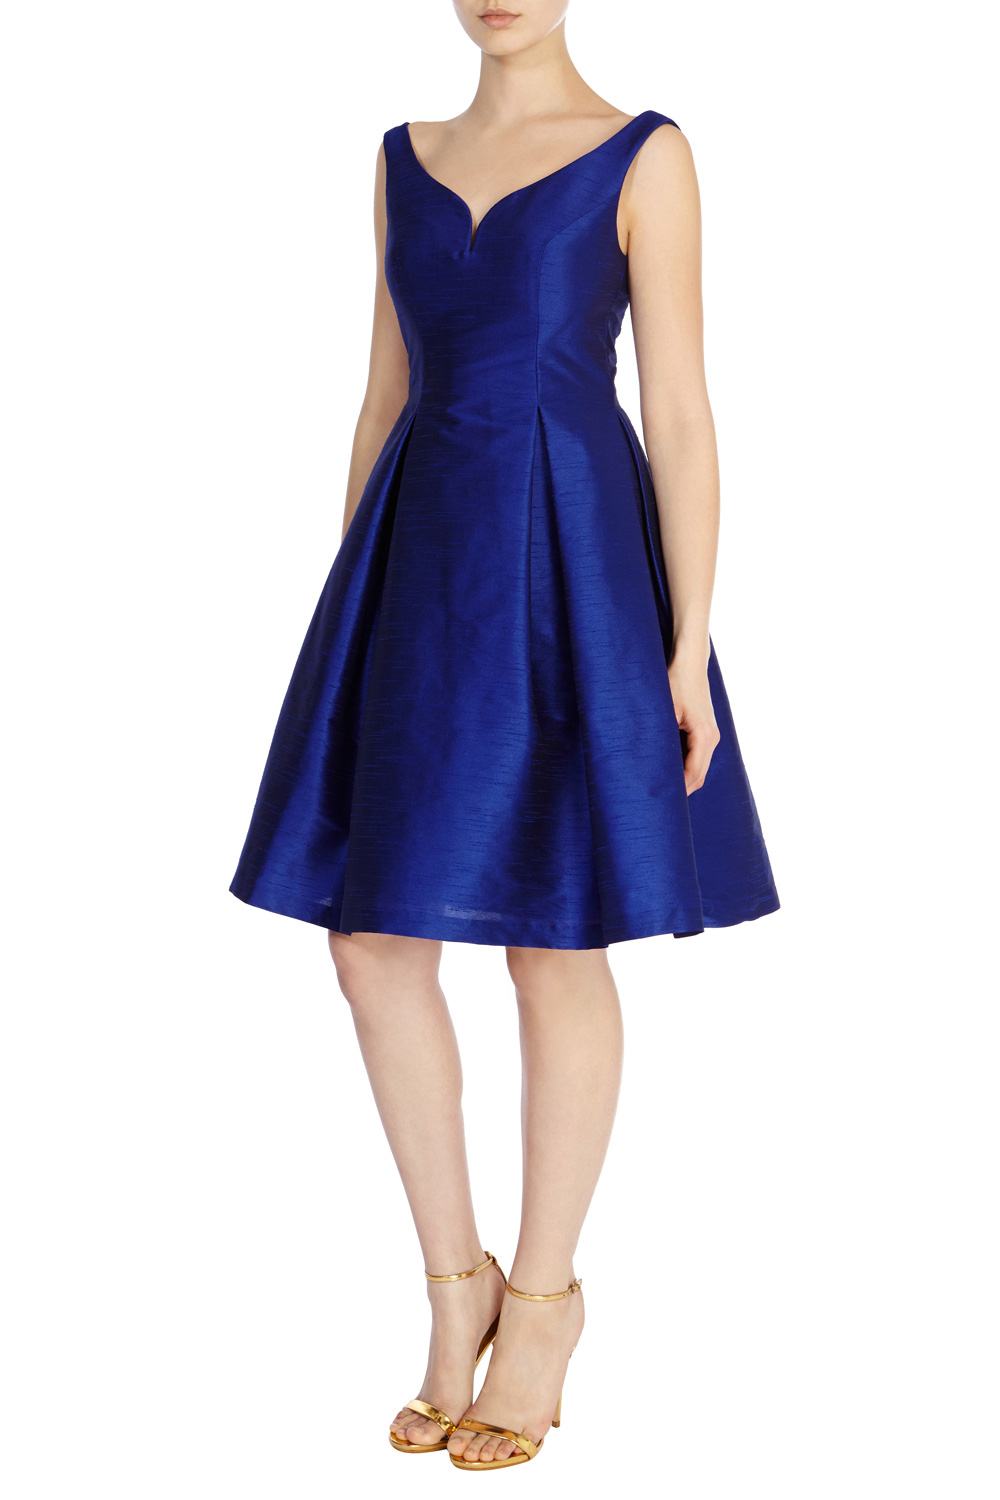 Lyst - Coast Giuglia Dress in Blue